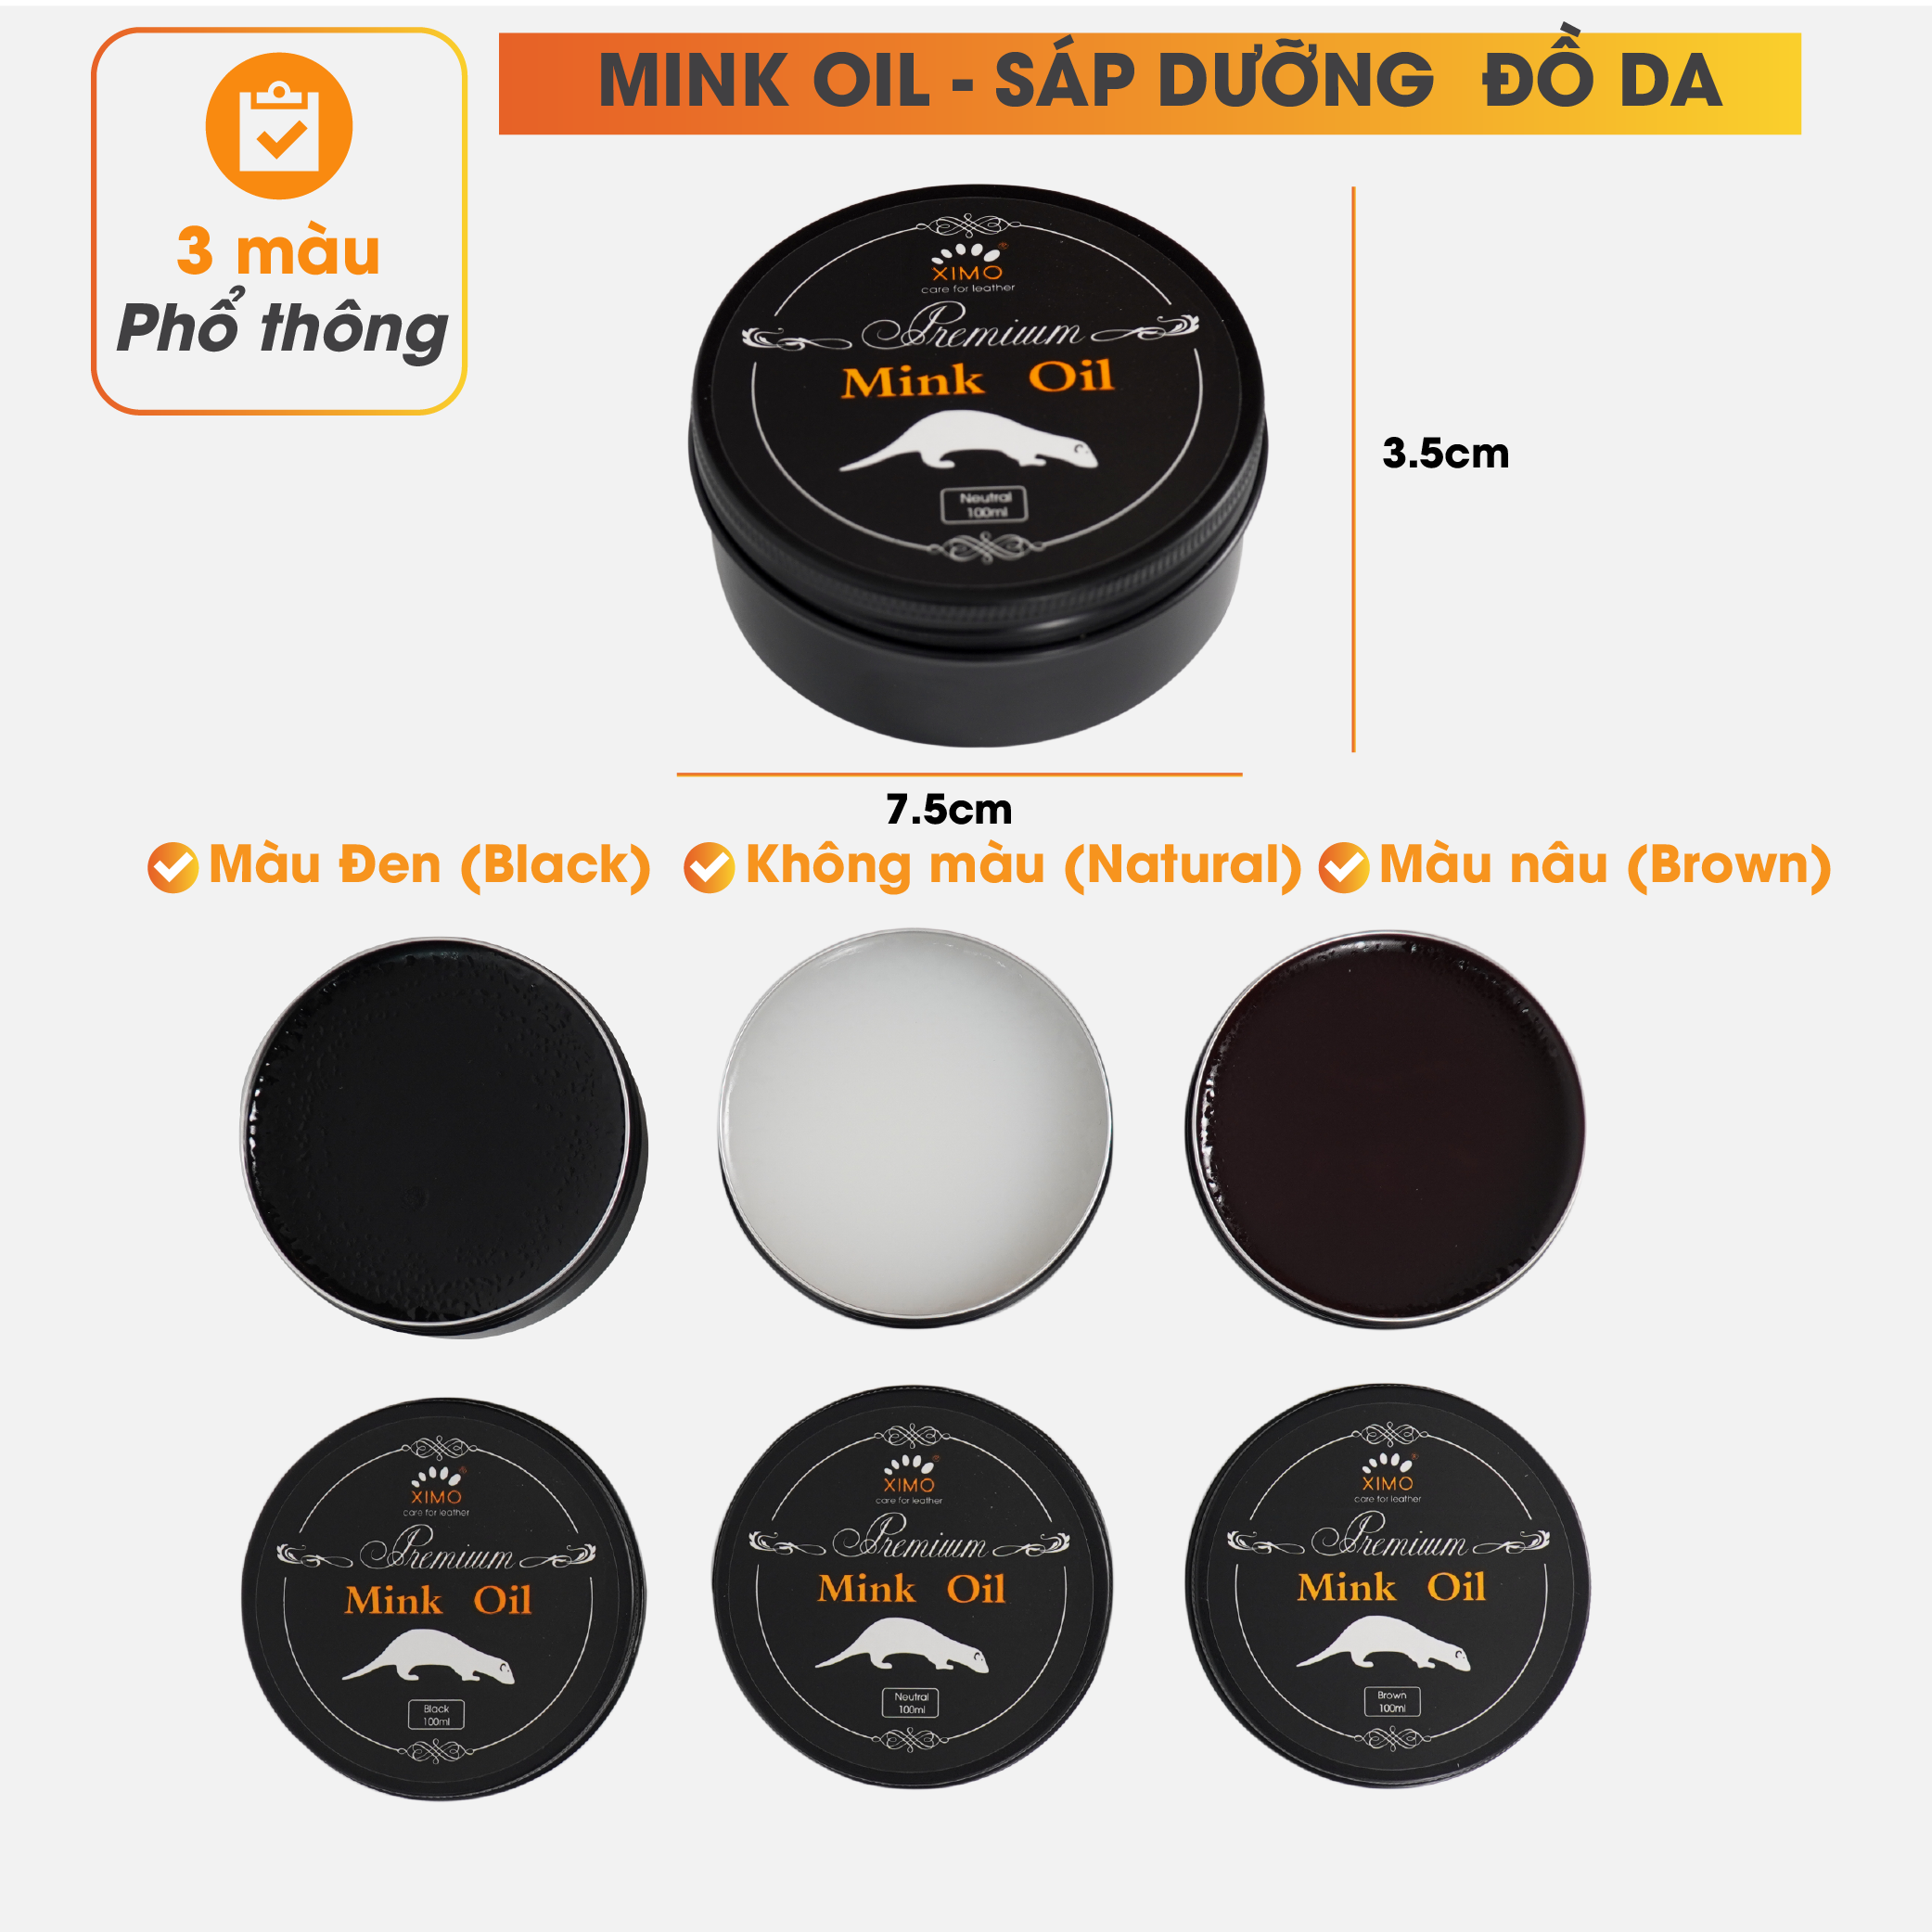 Hình ảnh Mink oil mỡ chồn XIMO chuyên bảo dưỡng chăm sóc đồ da, làm mới, phục hồi giày da, túi xách, áo da, ví da, ghế sofa XI01